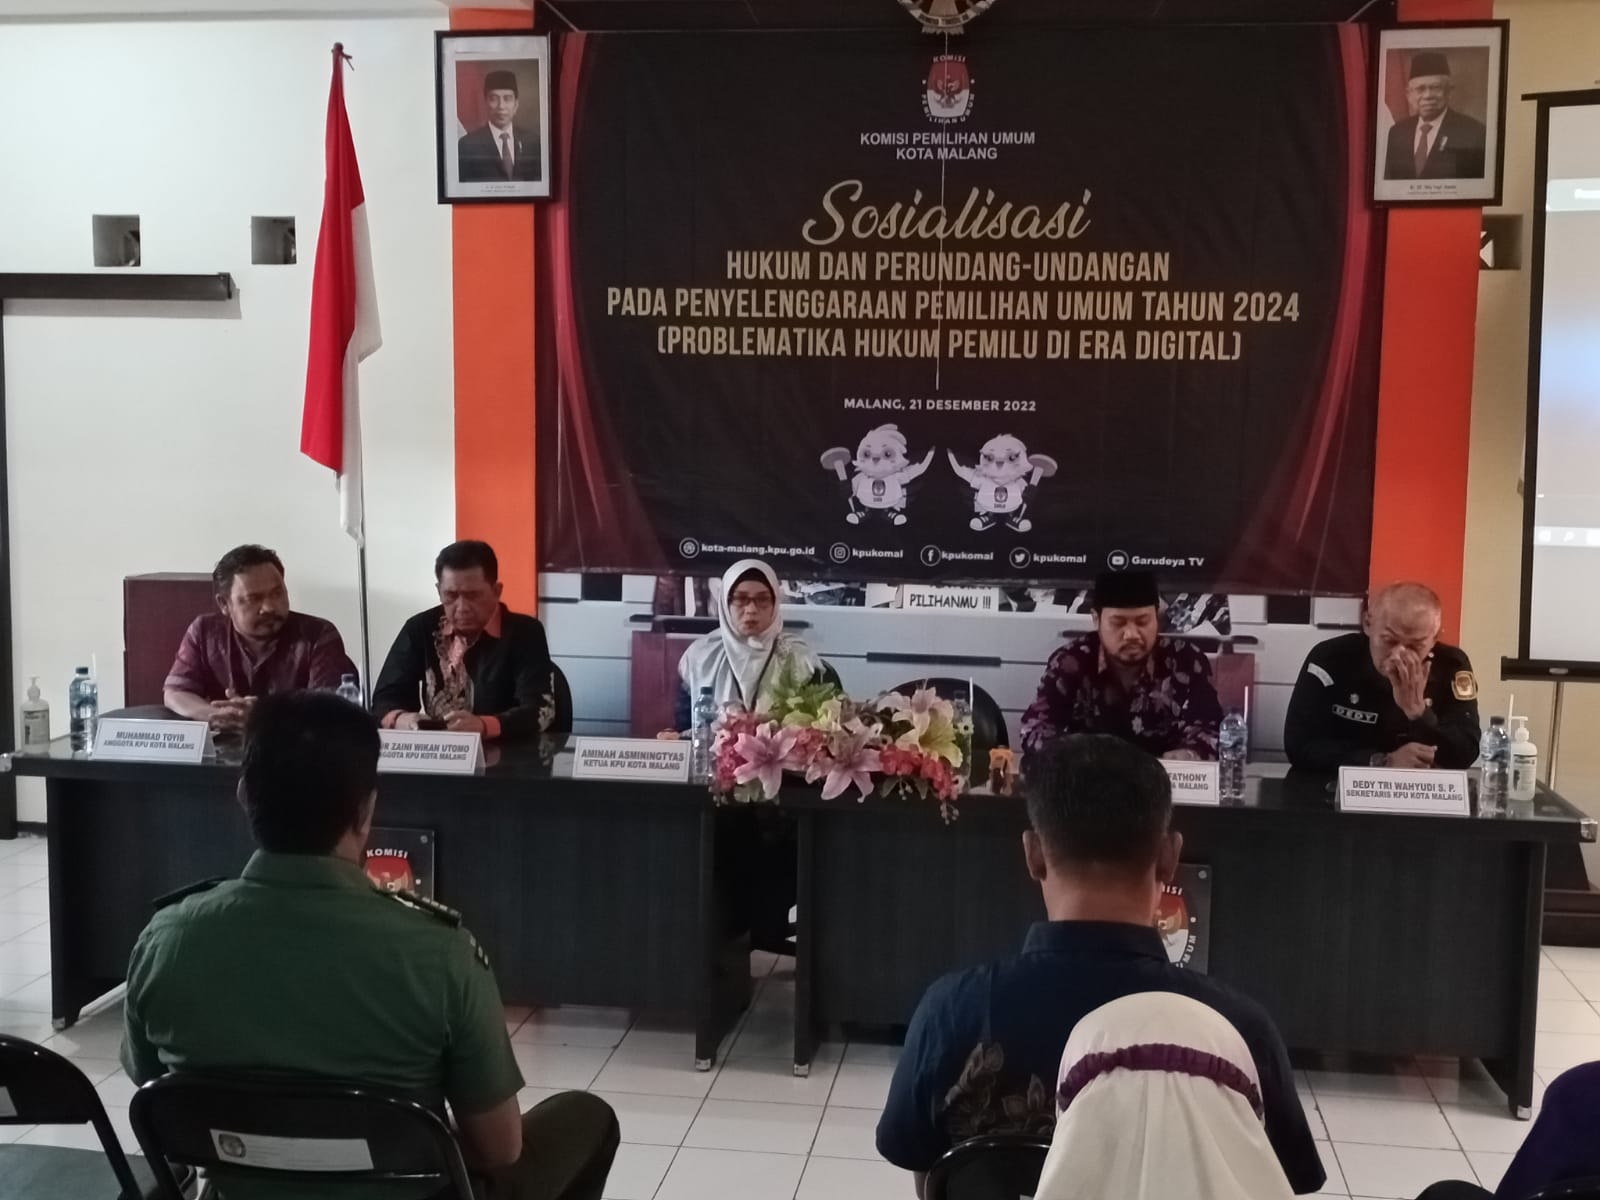 Sosialisasi yang digelar KPU Kota Malang denga mengambil tema "Problematika Hukum Pemilu di Era Digital" (ist)